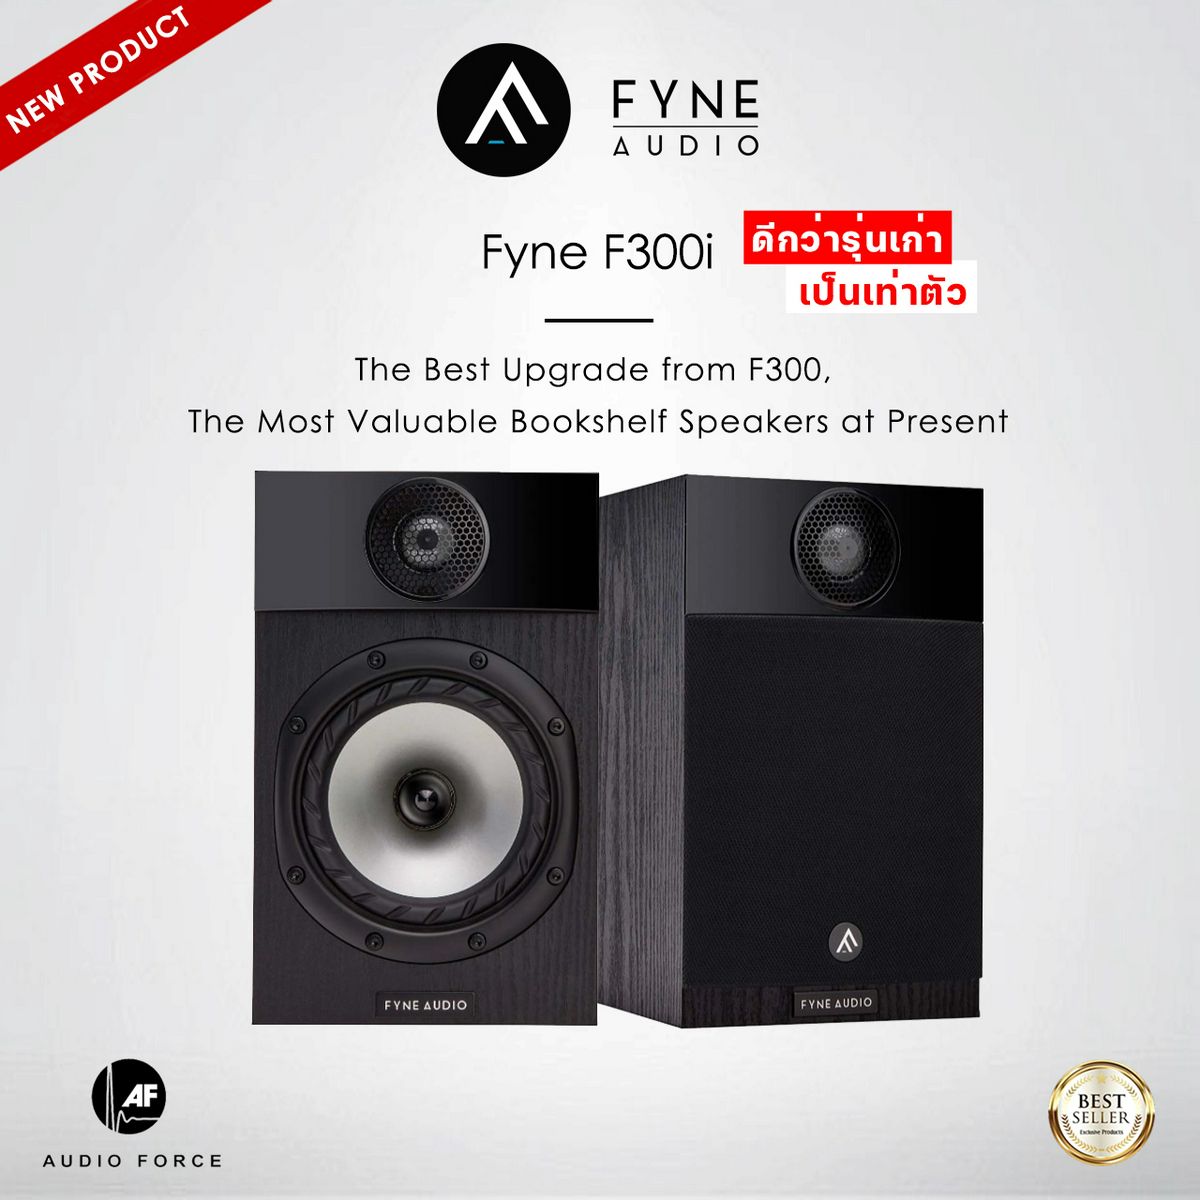 Fyne Audio F300i ''ดีกว่ารุ่นเก่า เป็นเท่าตัว